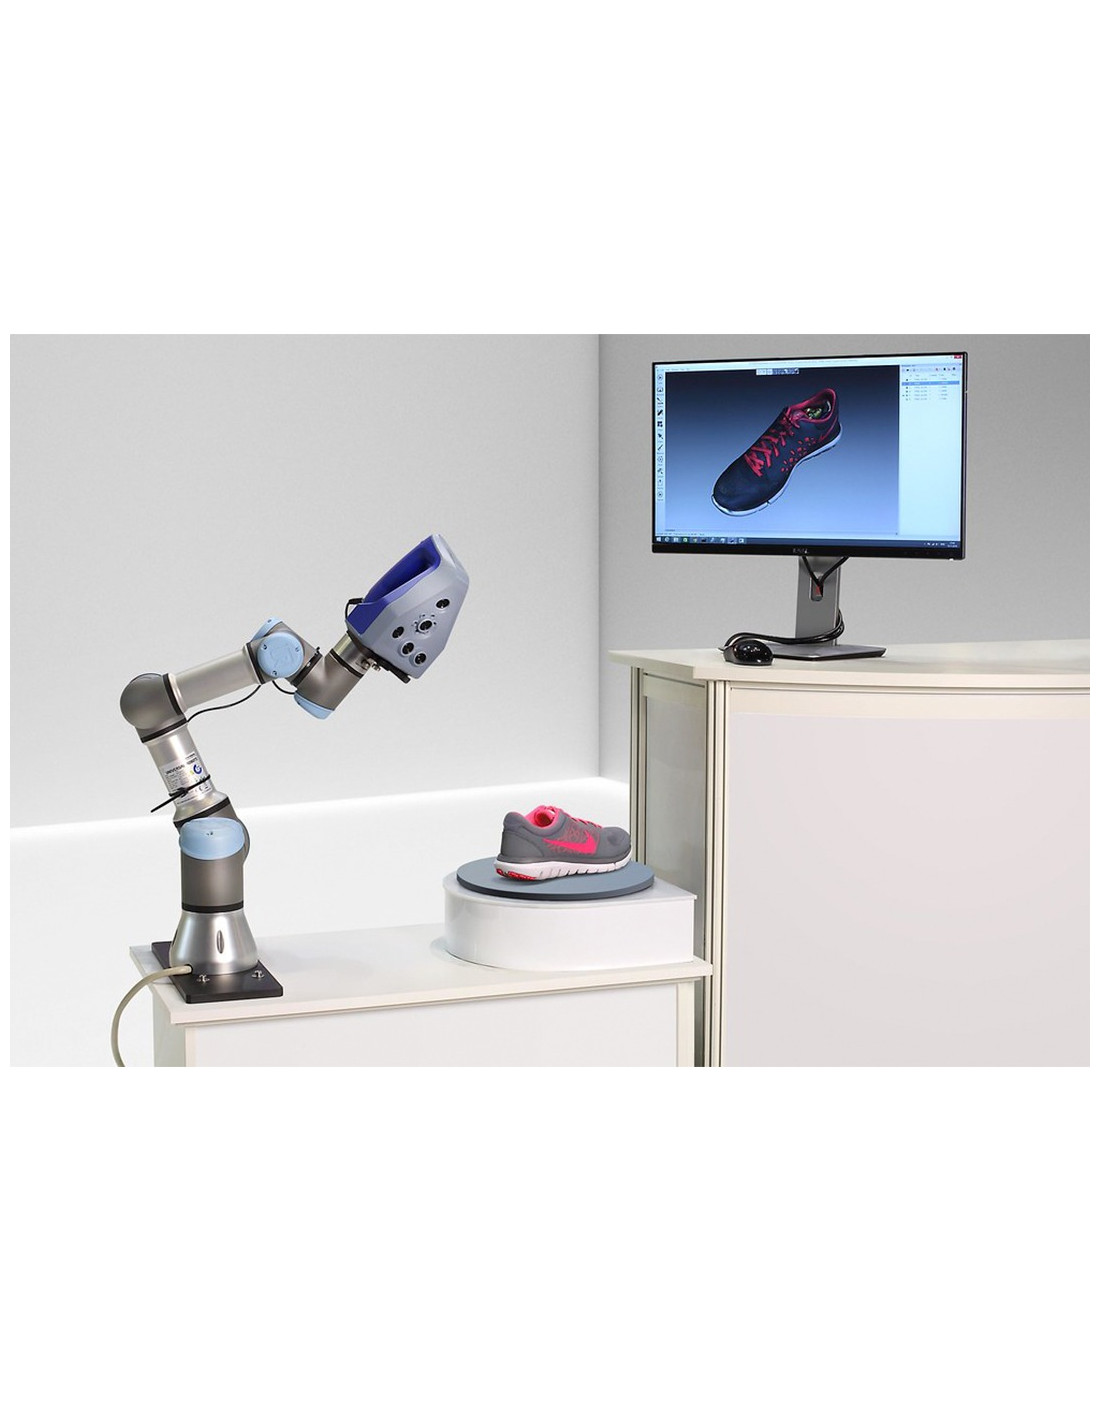 Escáner 3D Artec 3D - RoboticScan